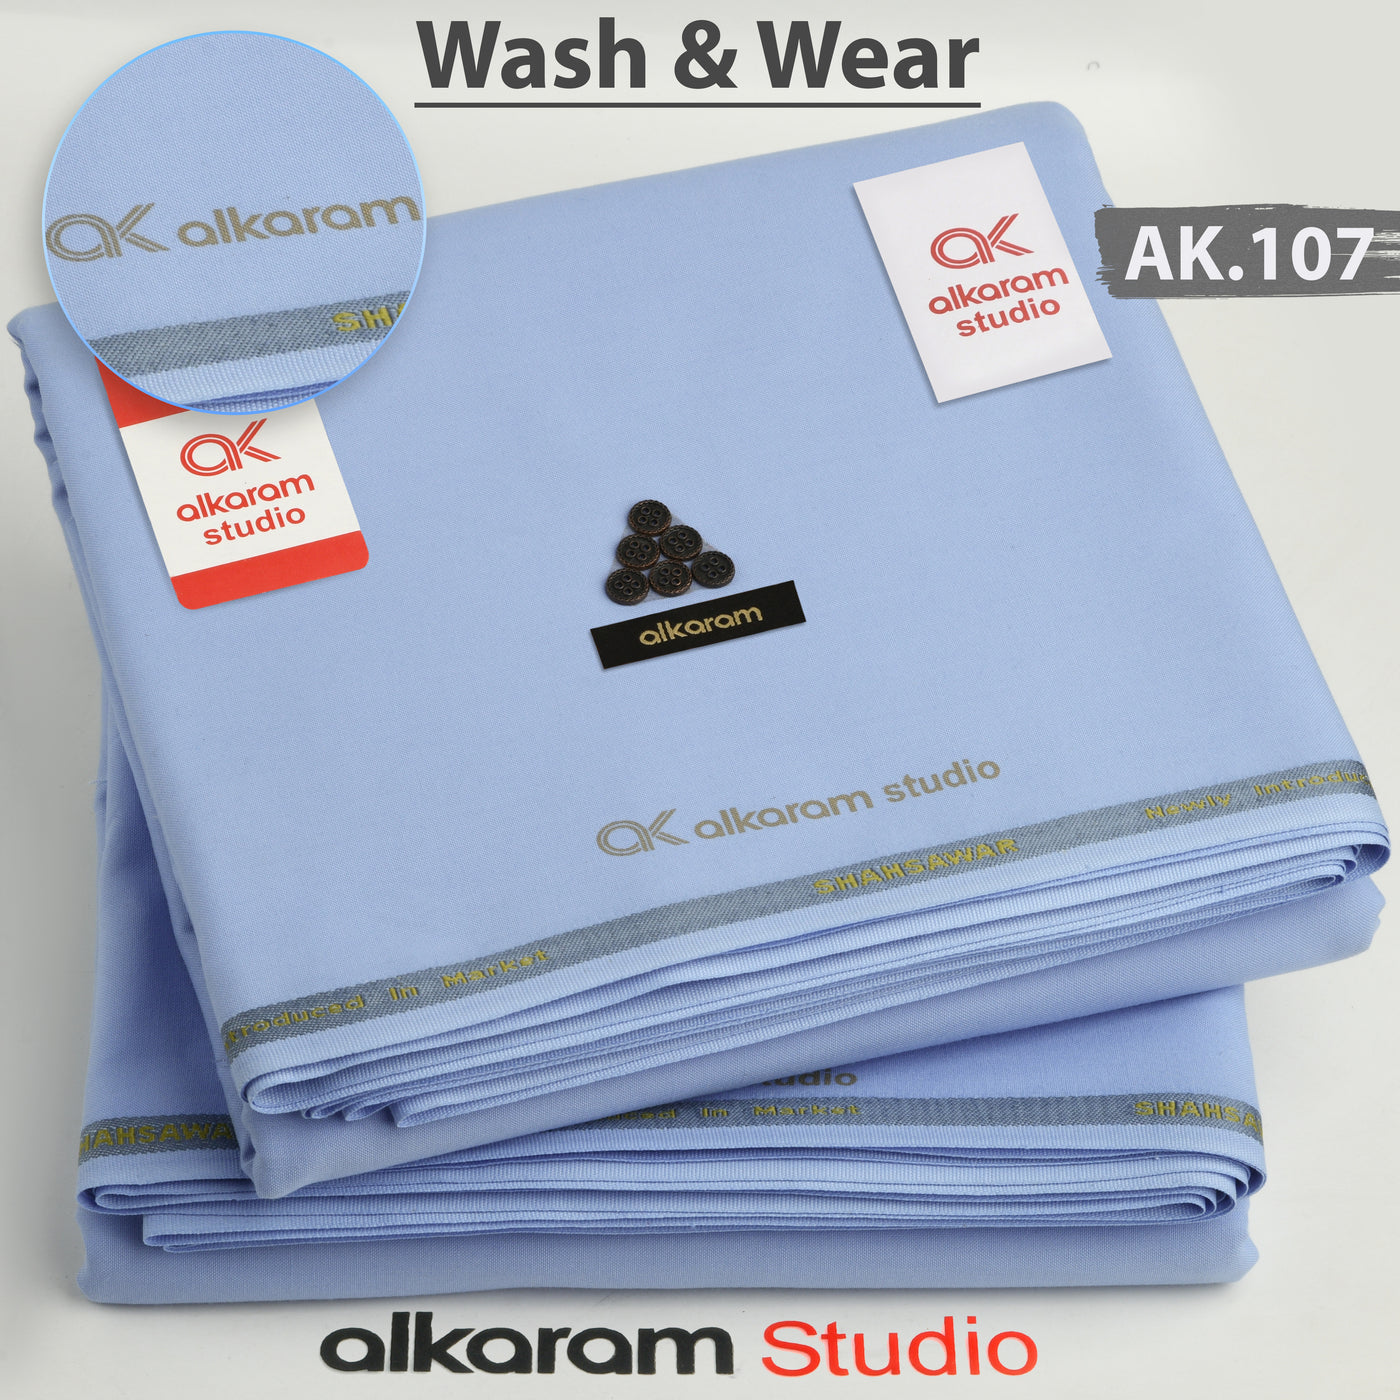 Alkaram Wash N Wear AK-107